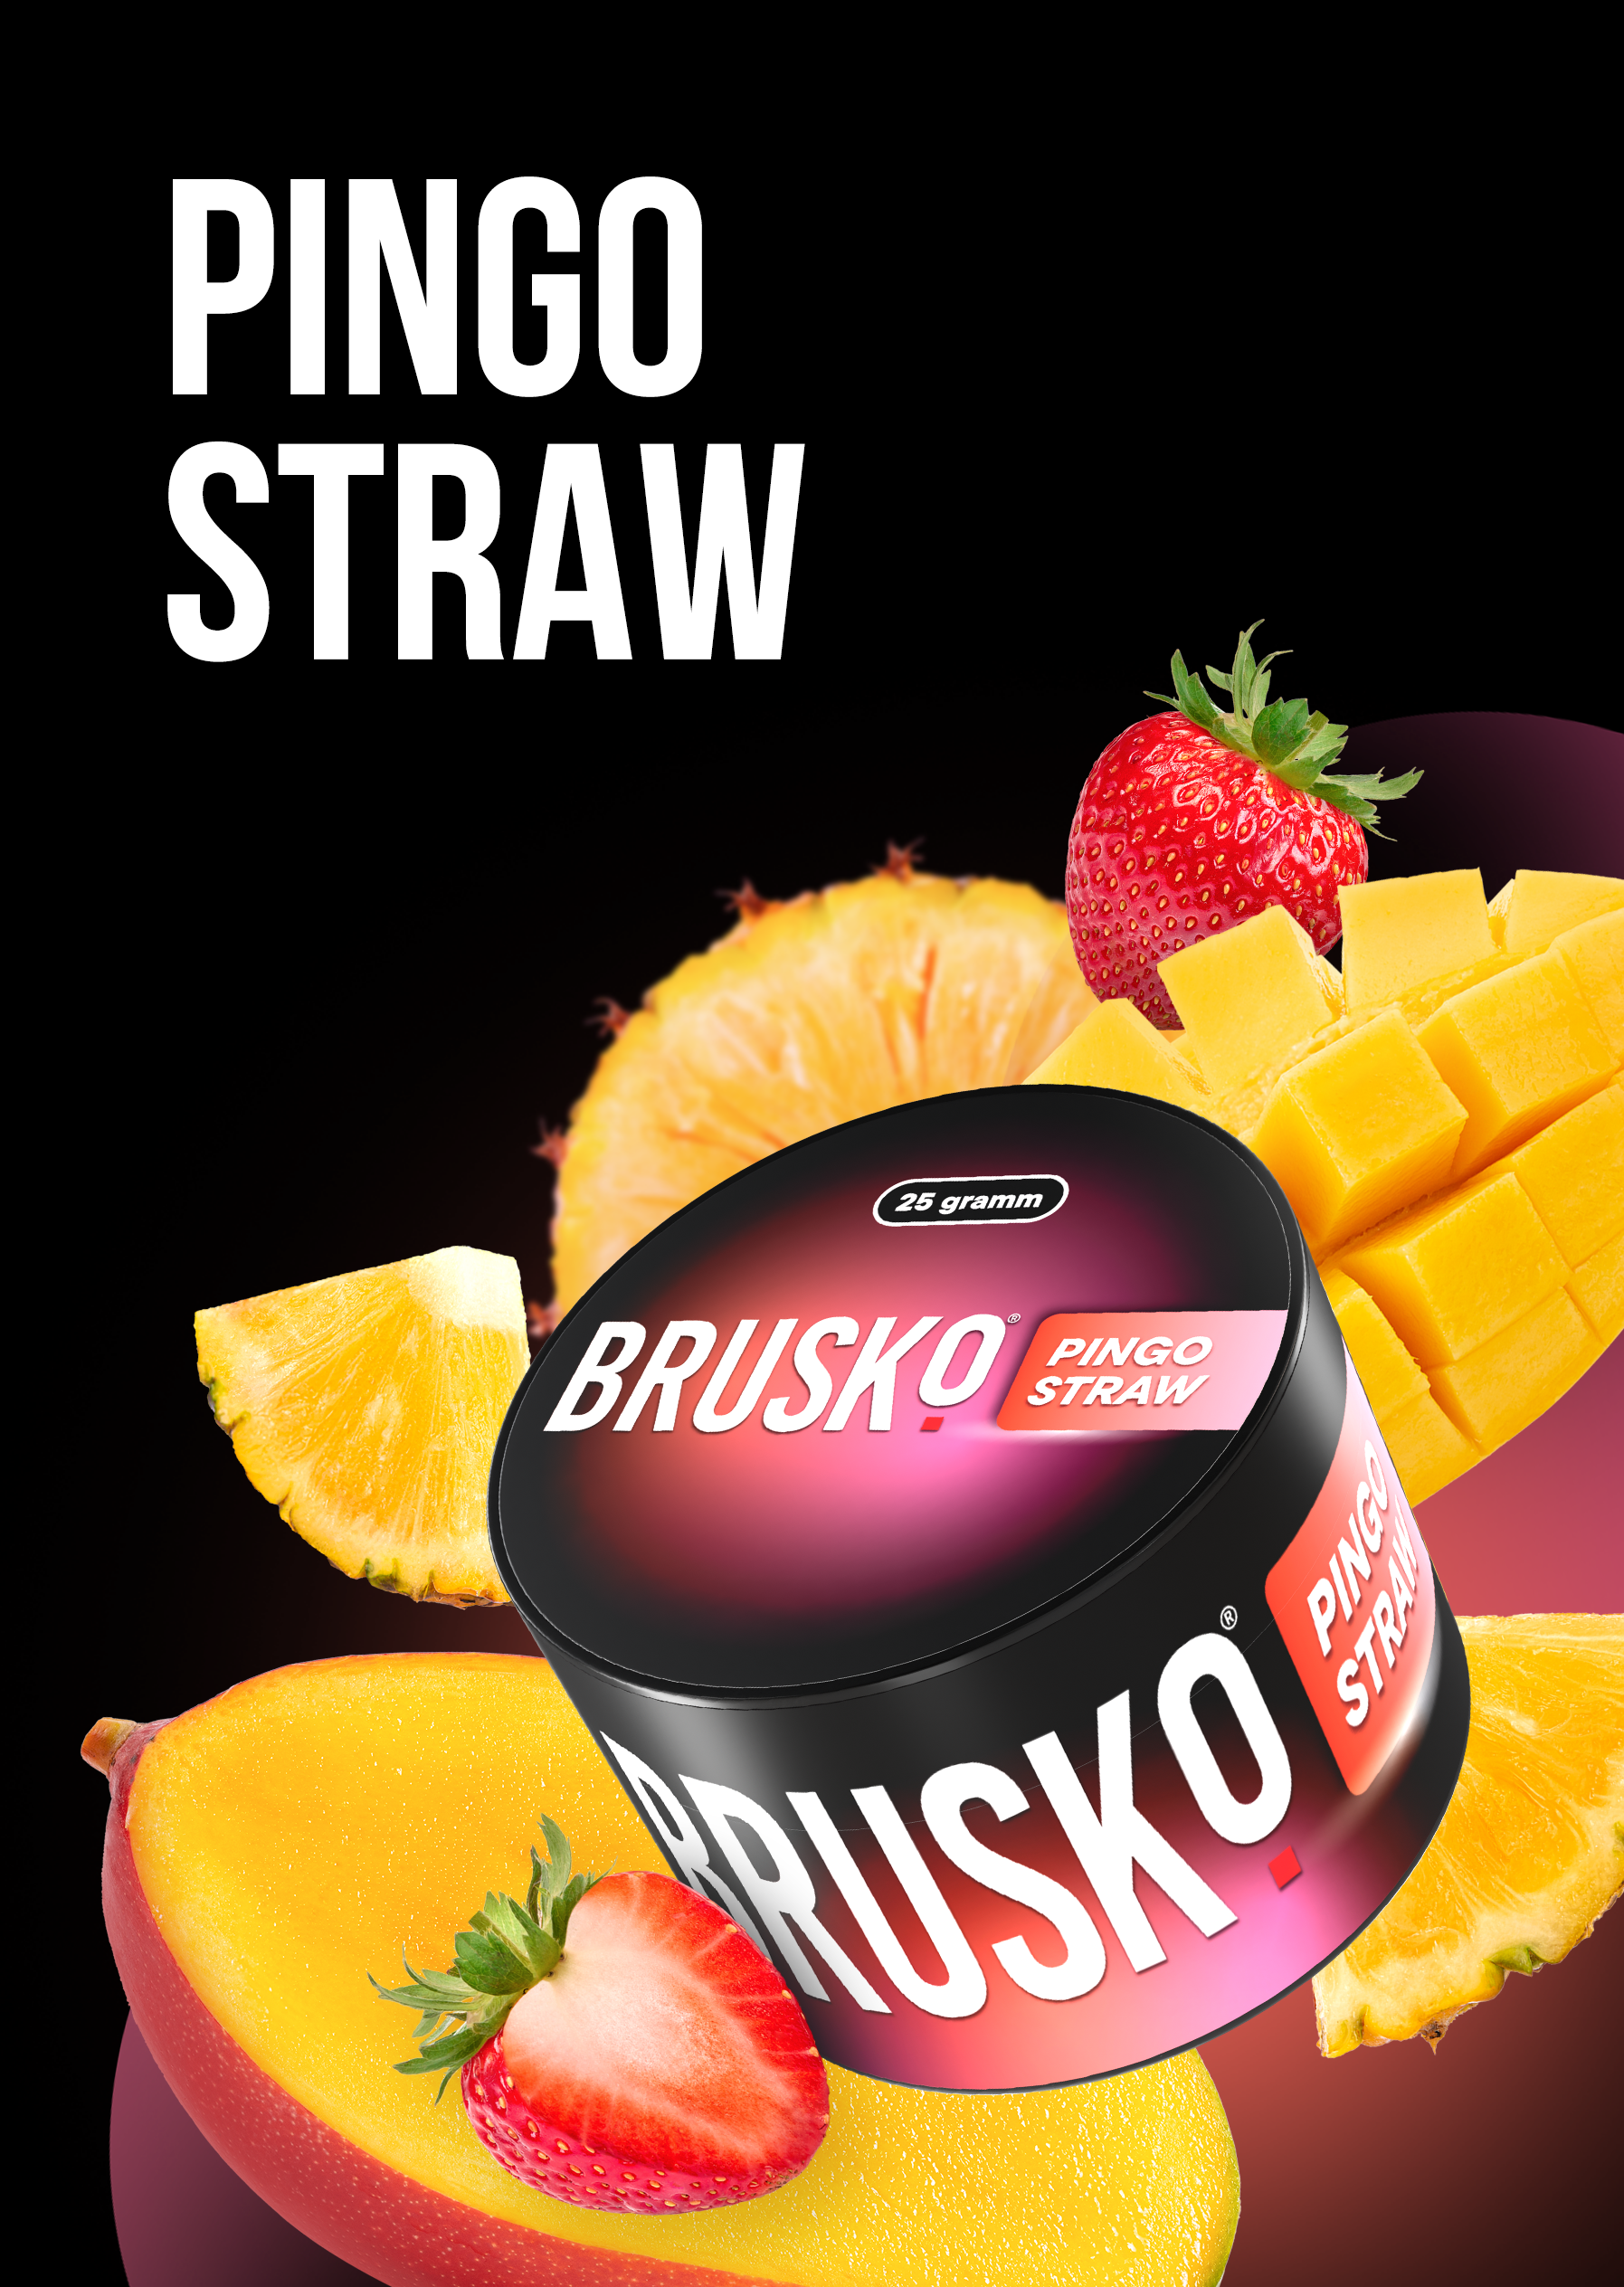 Brusko | Pingo Straw | 25g  